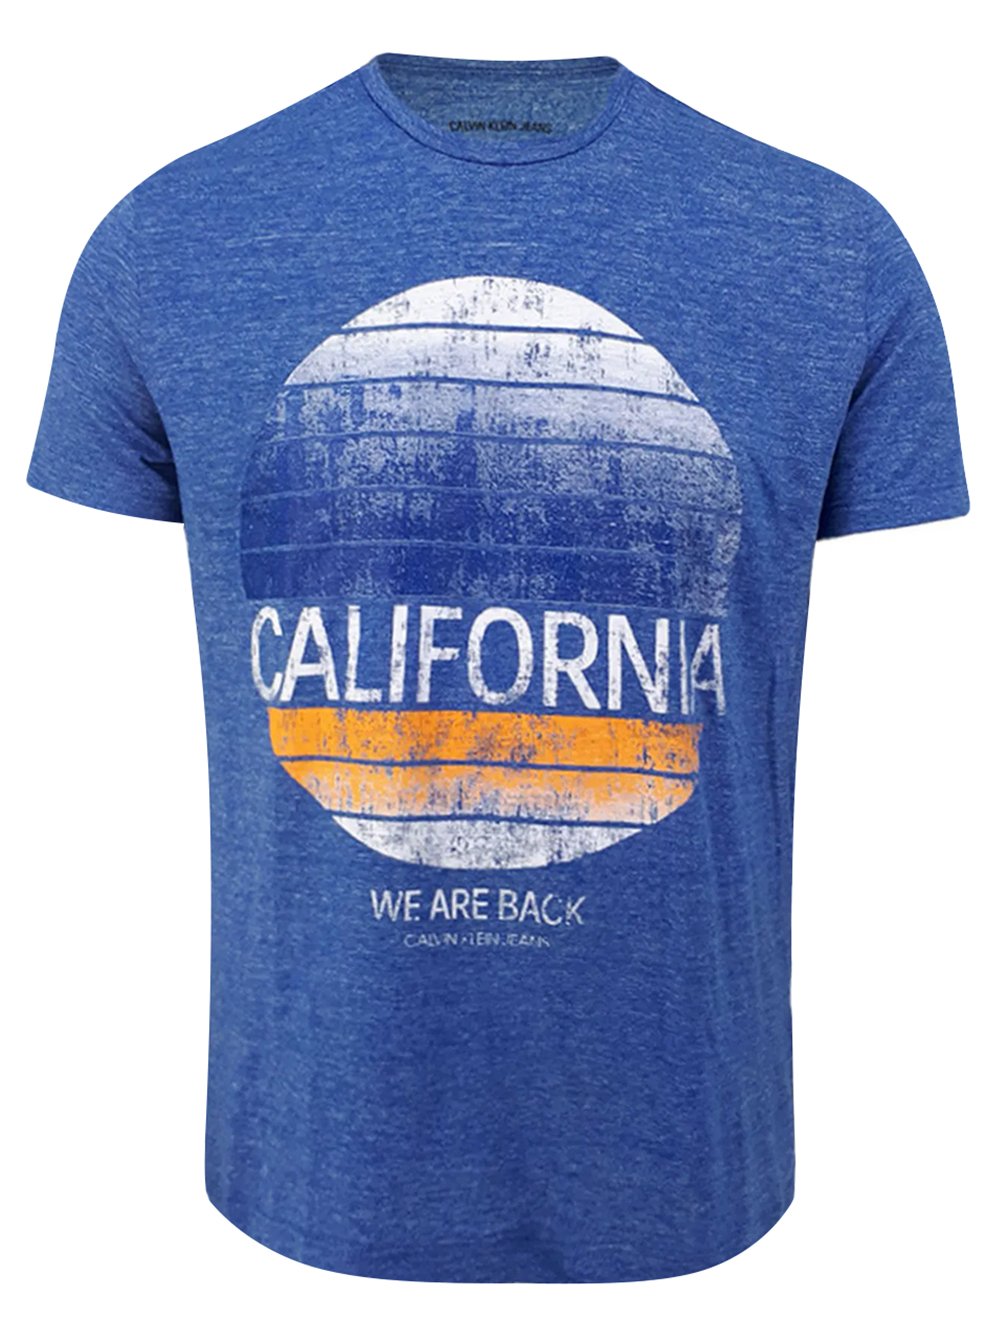 Camiseta Calvin Klein We Are Back California Azul Mescla